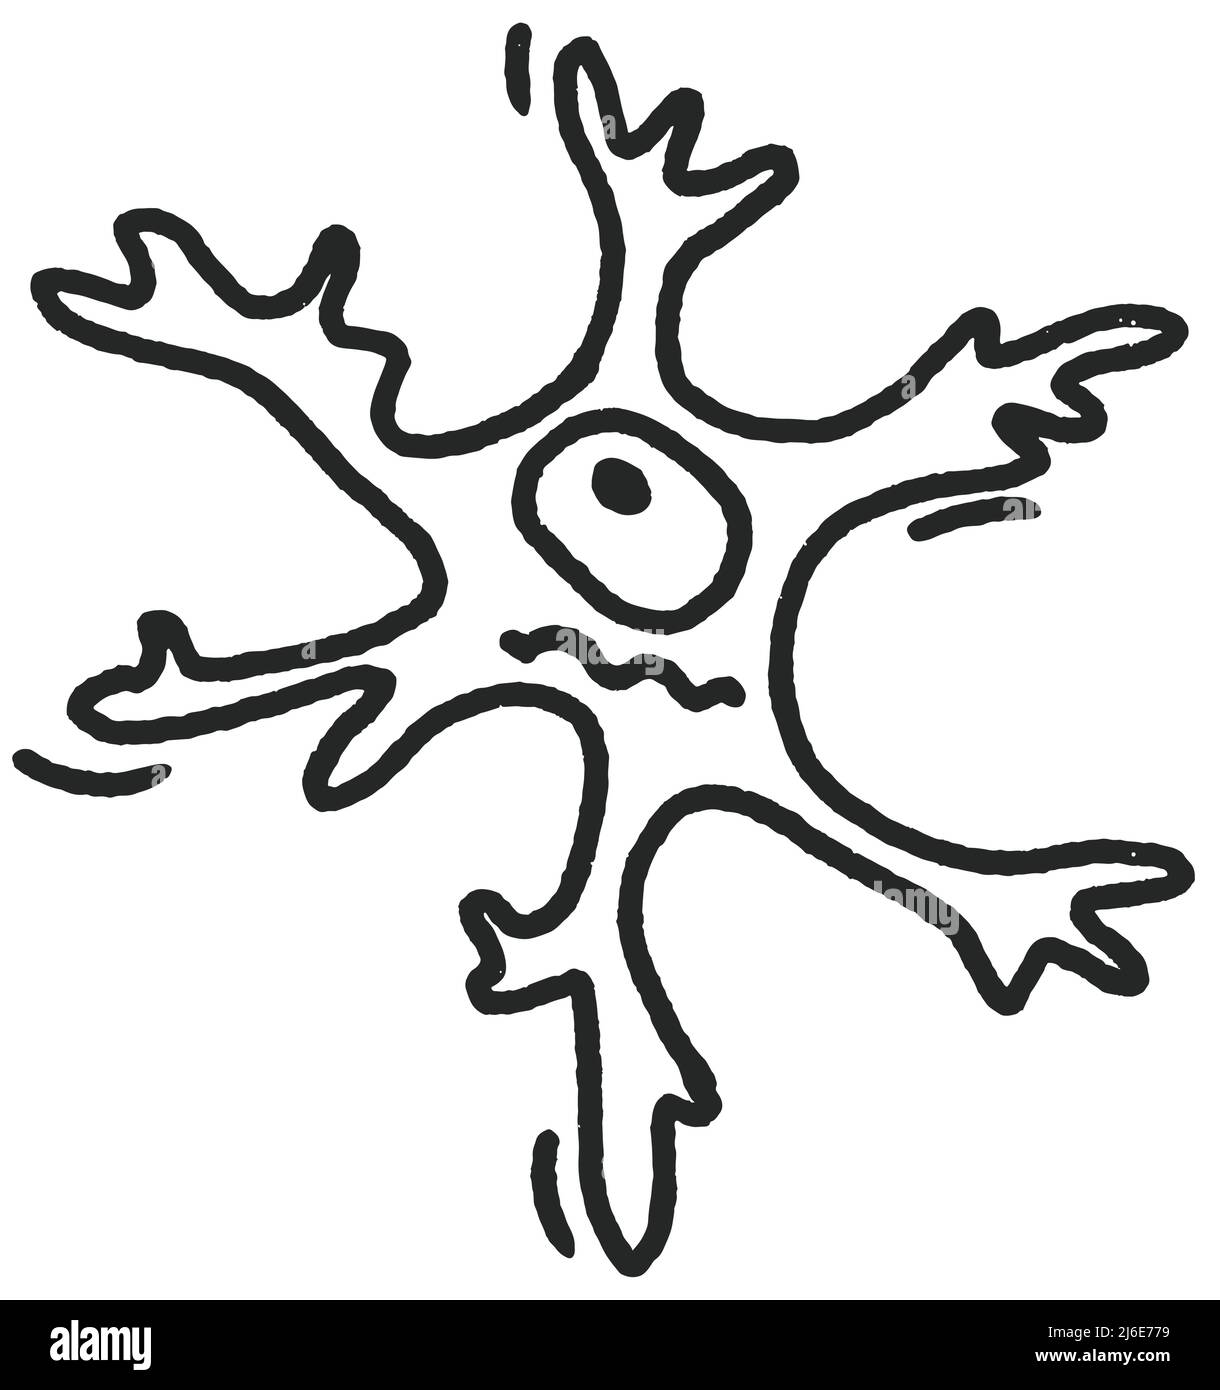 Neurone disegno a mano vettore di schizzo illustrazione di doodle isolato su sfondo bianco arte linea Illustrazione Vettoriale